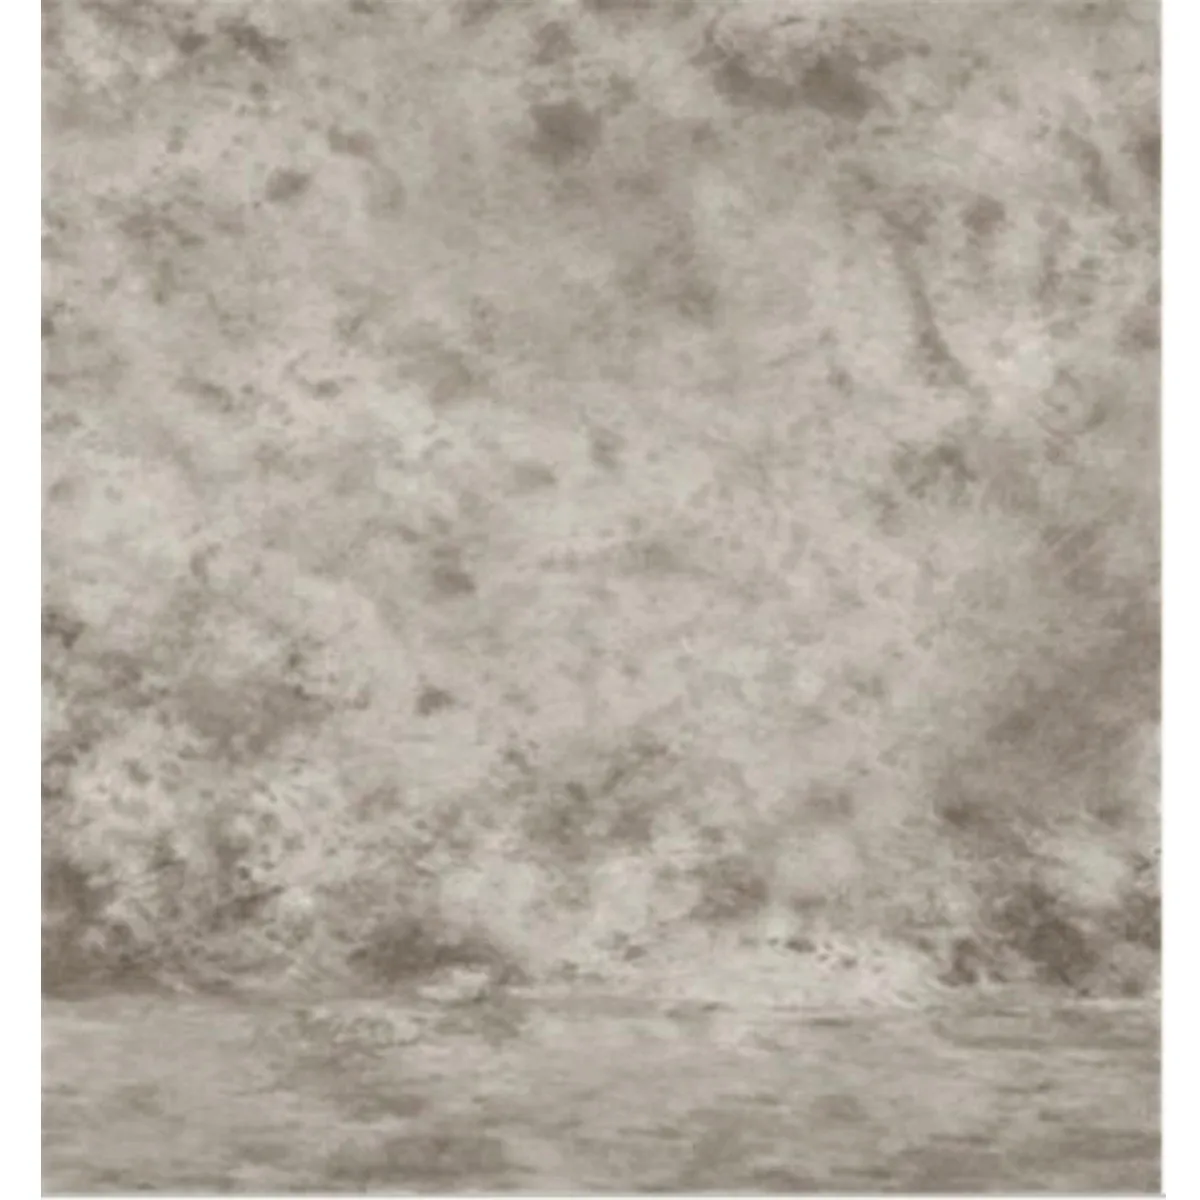 8x10 футов тонкий Виниловый фон с серой стеной для студийной фотосъемки тканевые фоны